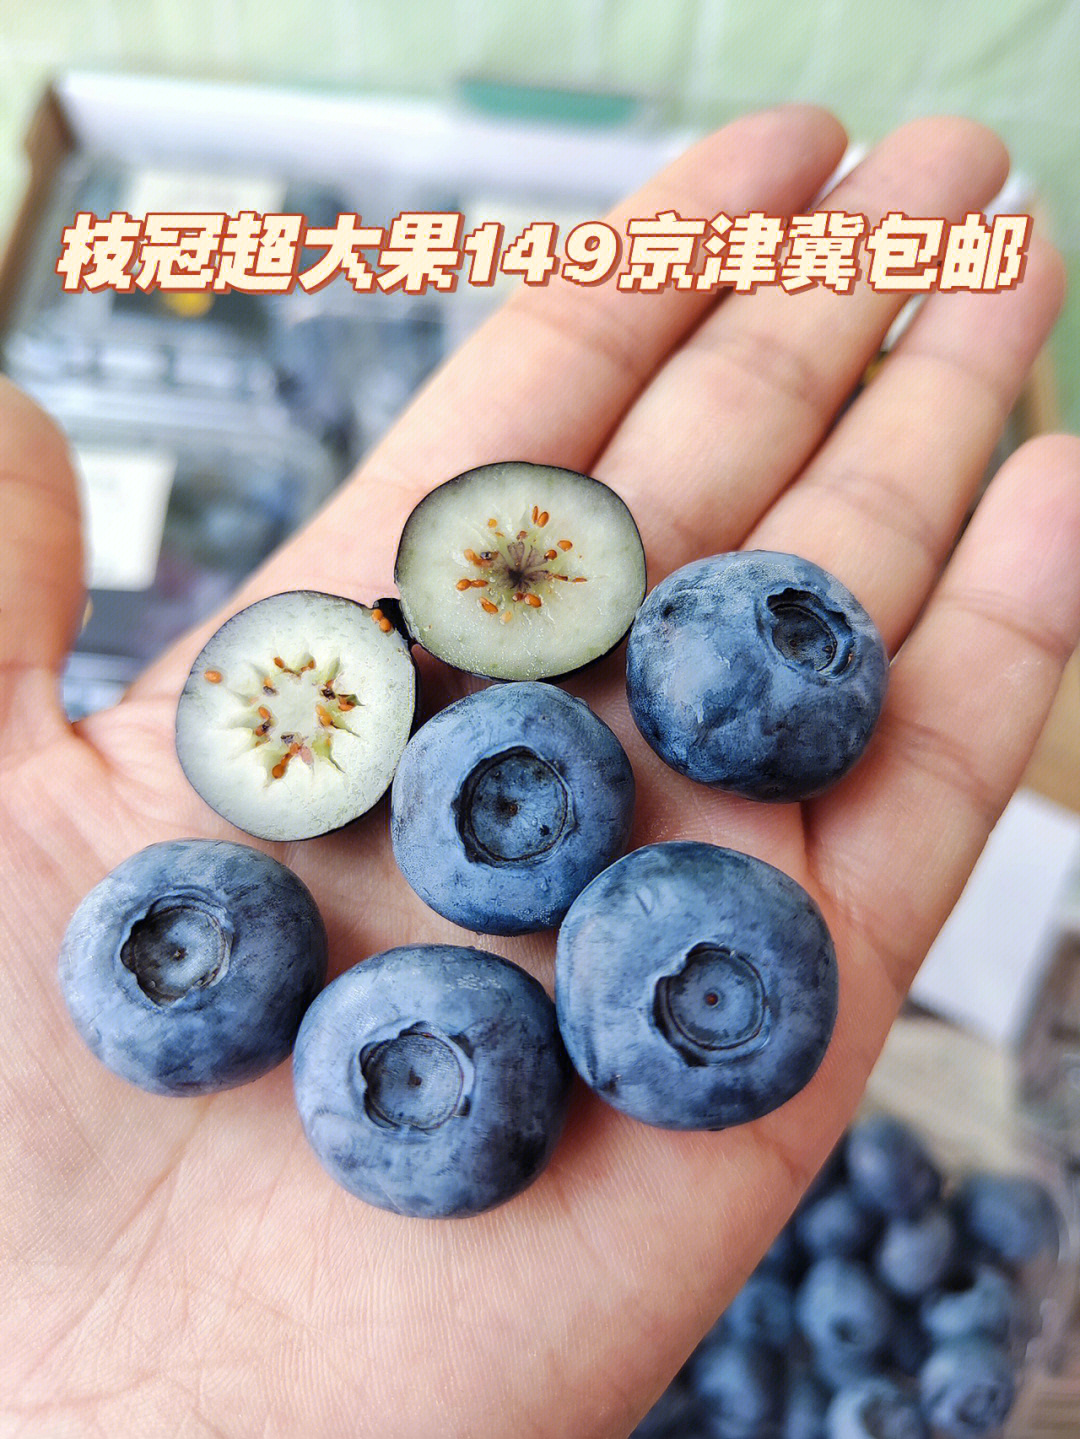 绿宝石蓝莓酸甜度图片